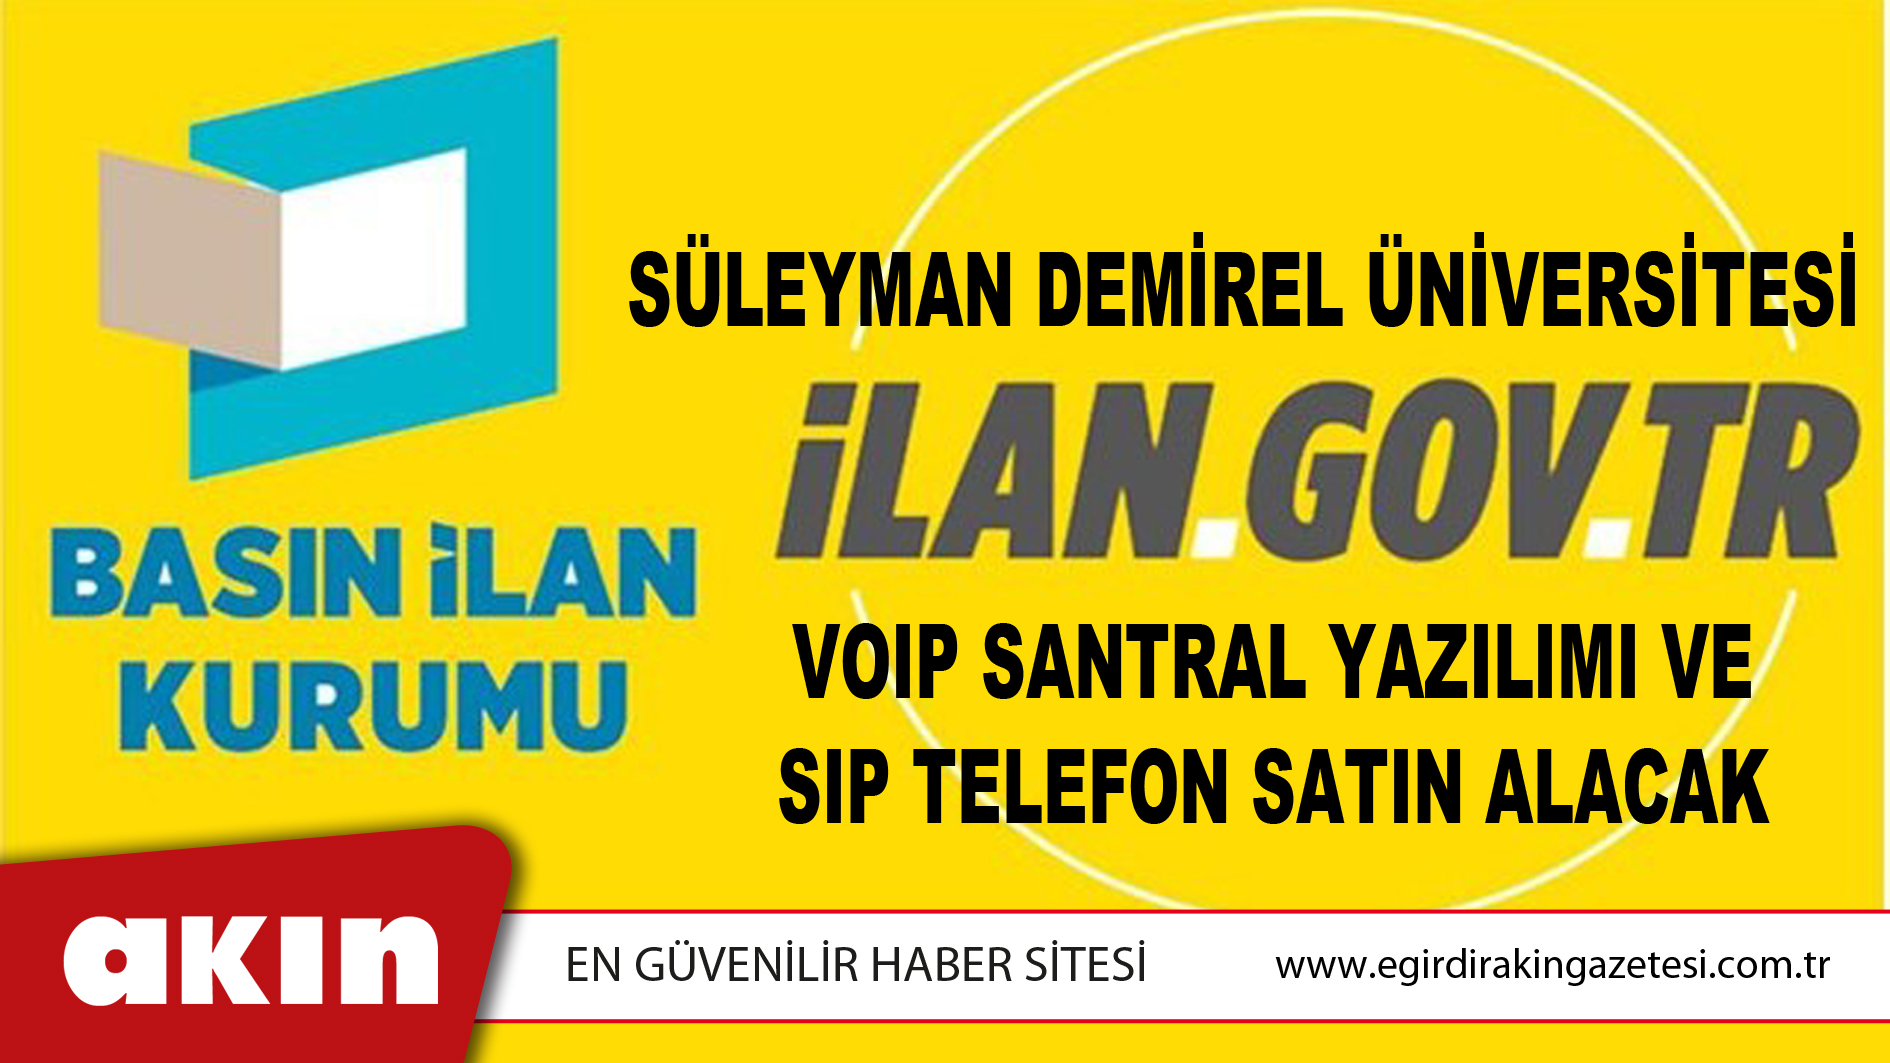 Süleyman Demirel Üniversitesi VOIP Santral Yazılımı Ve Sıp Telefon Satın Alacak